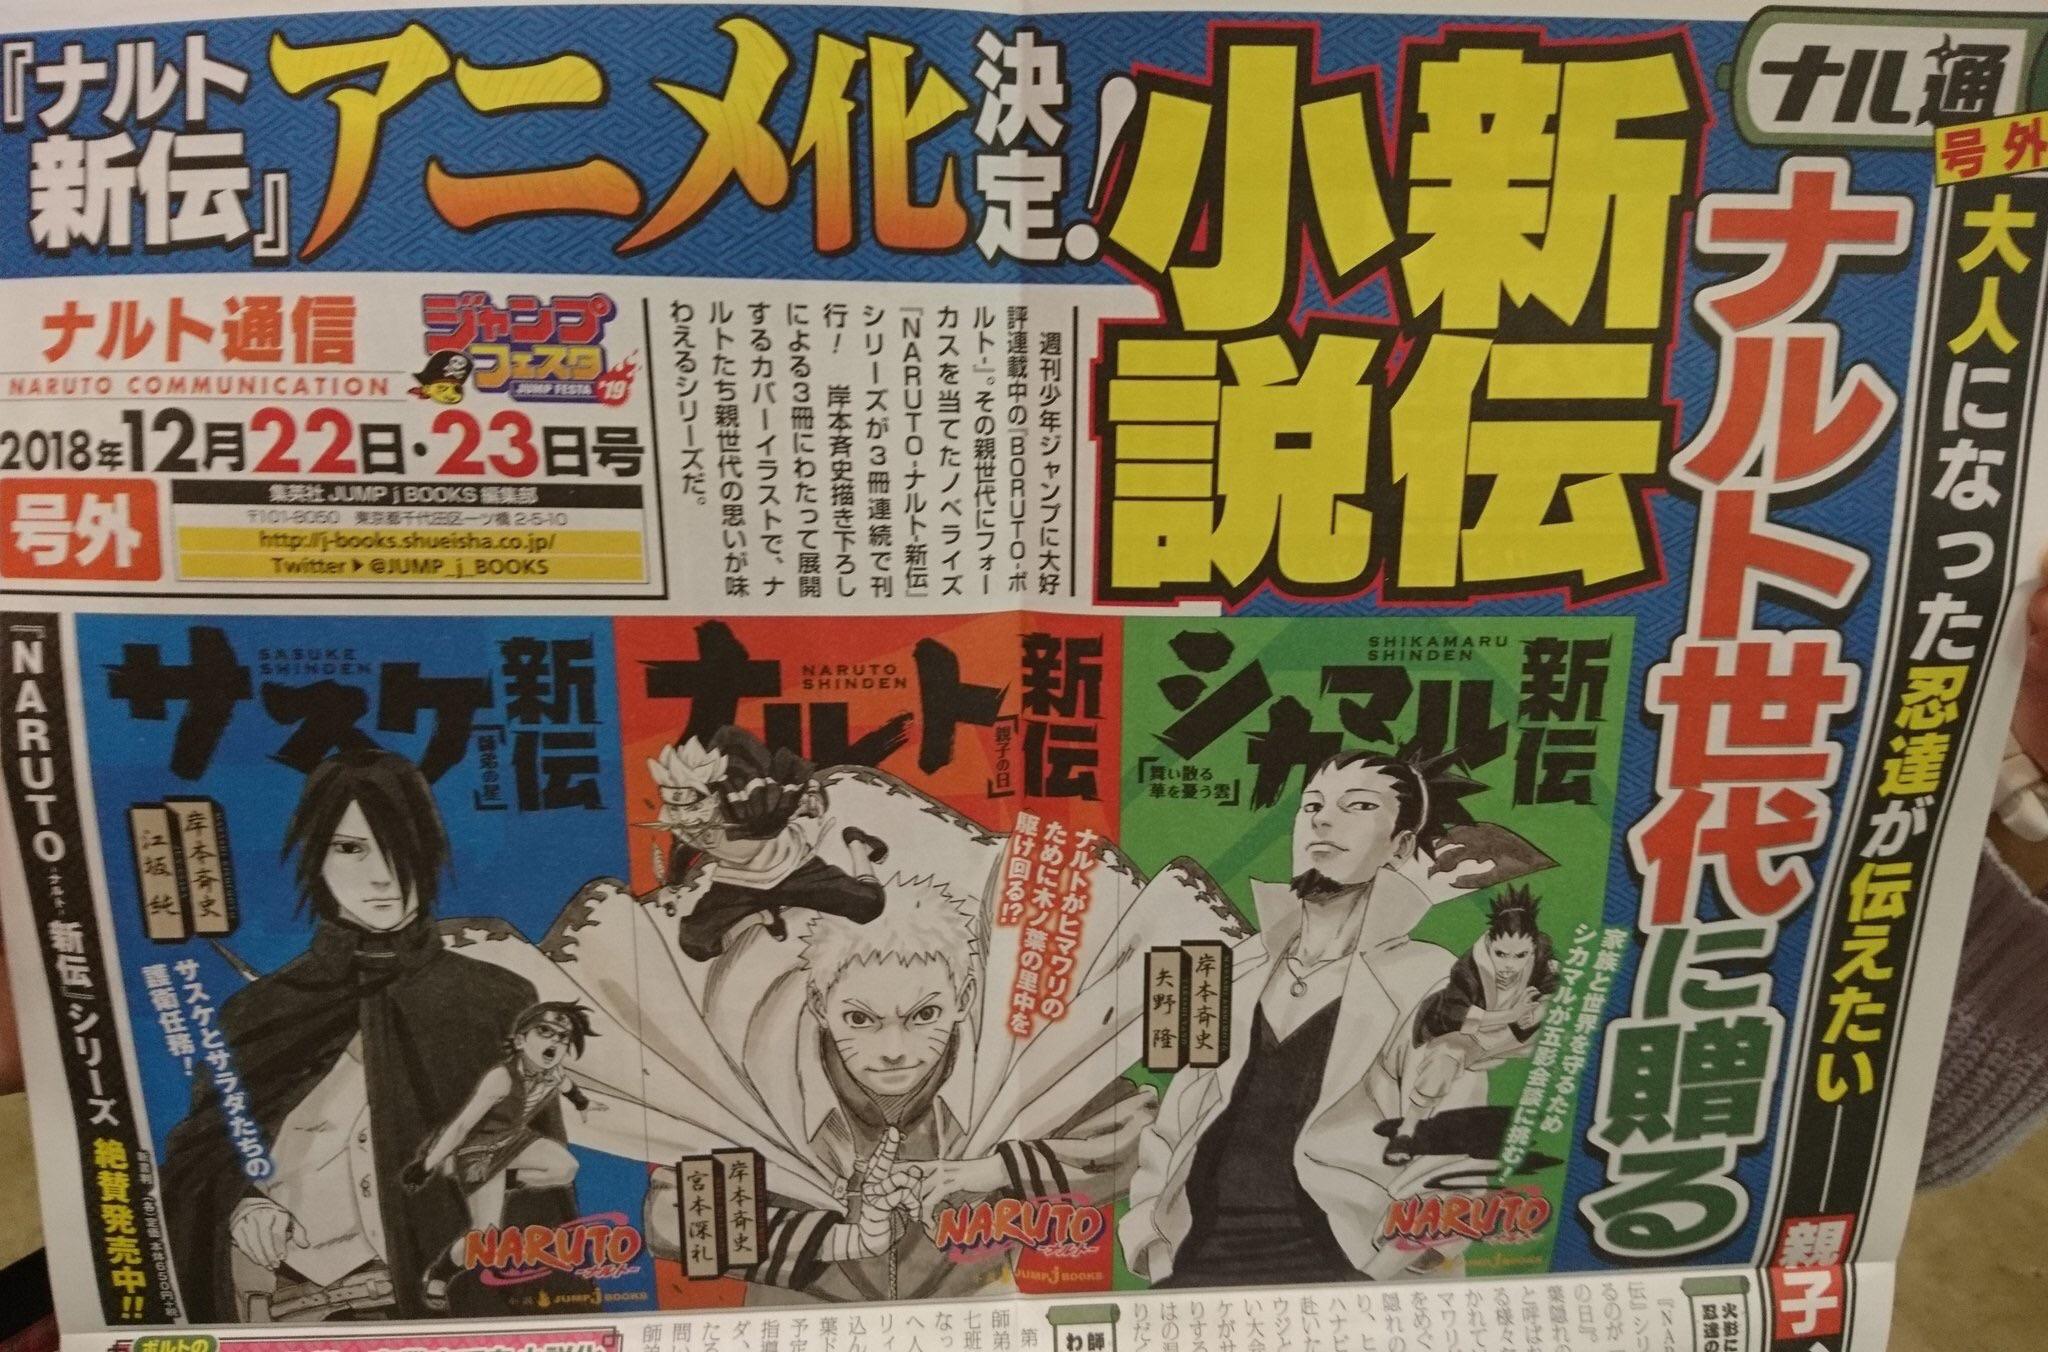 Boruto: Naruto Next Generations. Nova ending terá revelado o fim de  Konoha? - 4gnews